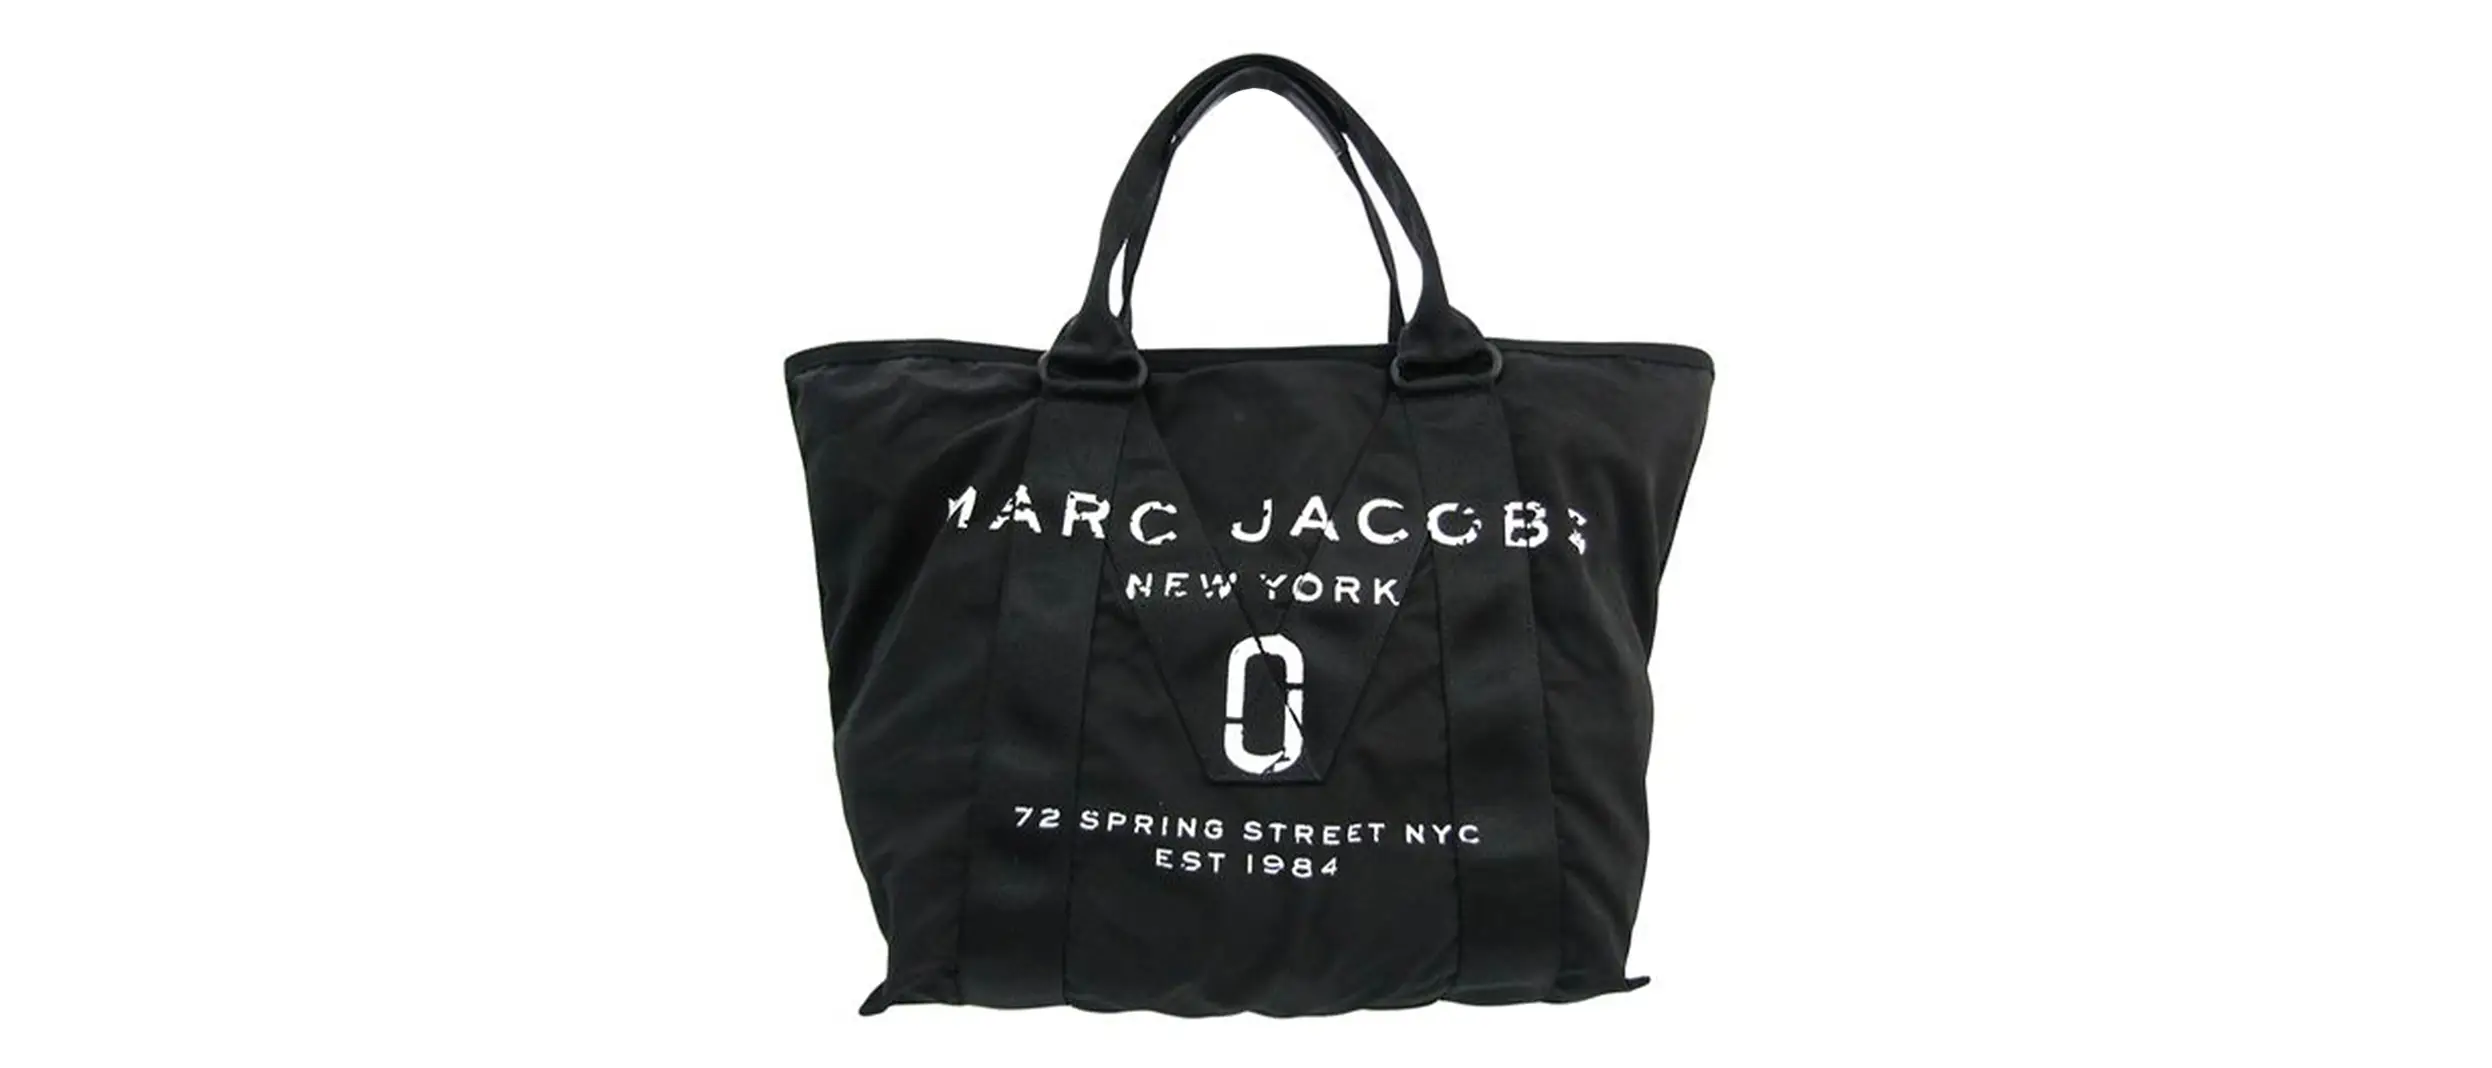 new-york-marc-jacobs-black-and-white-handbag.jpg